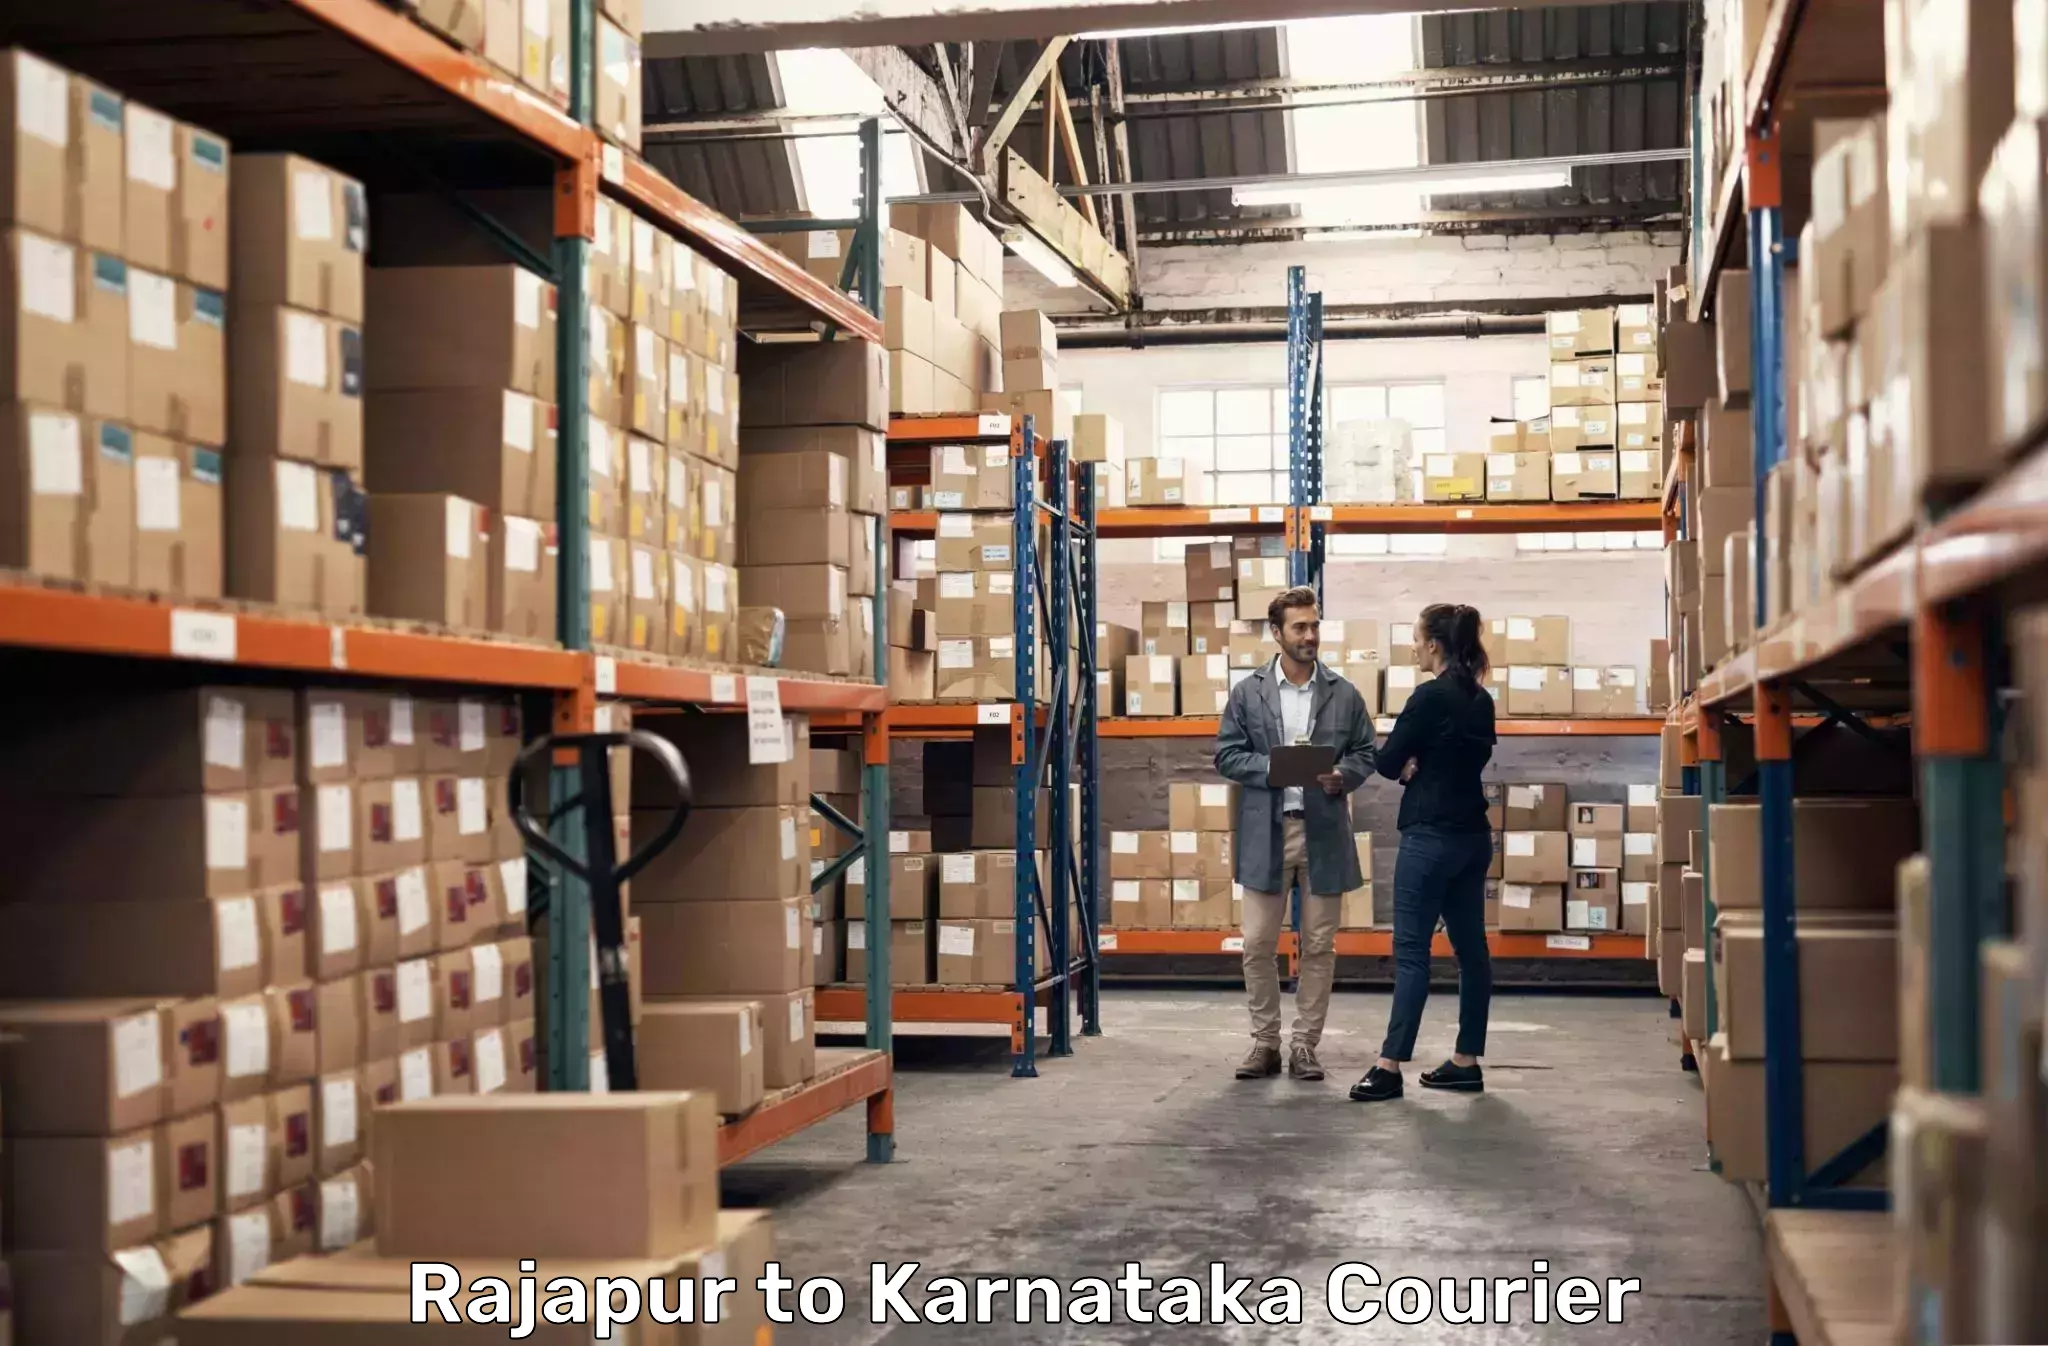 Reliable parcel services Rajapur to Mulbagal